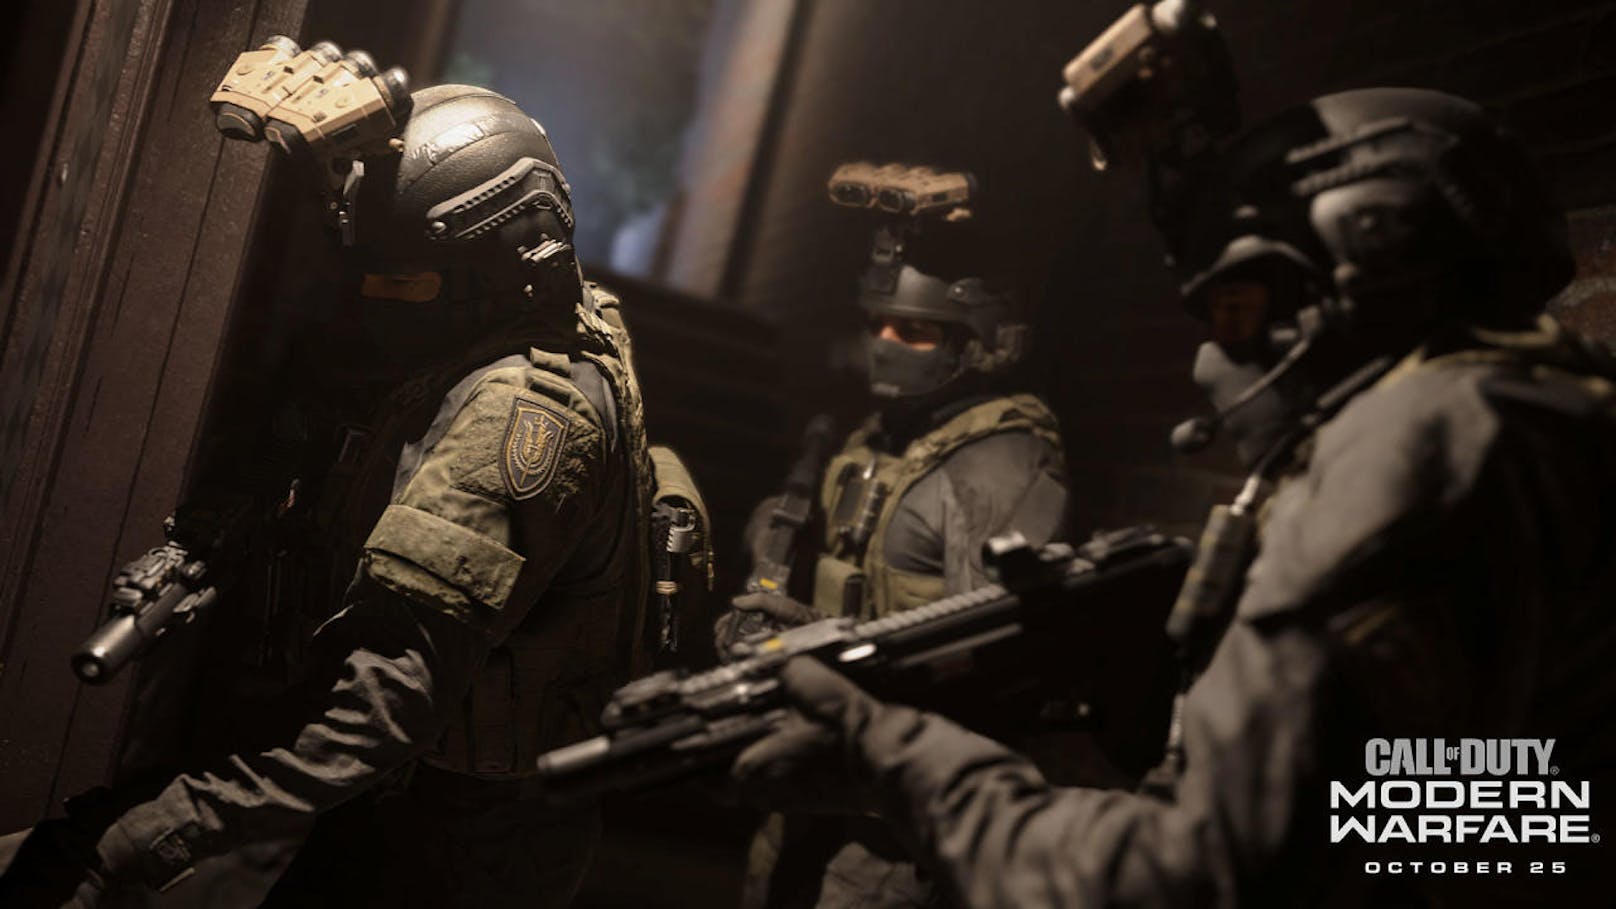  <a href="https://www.heute.at/s/call-of-duty-modern-warfare-test-ps4-review-schrecklich-schon-44468552" target="_blank">Call of Duty: Modern Warfare (2019)</a>